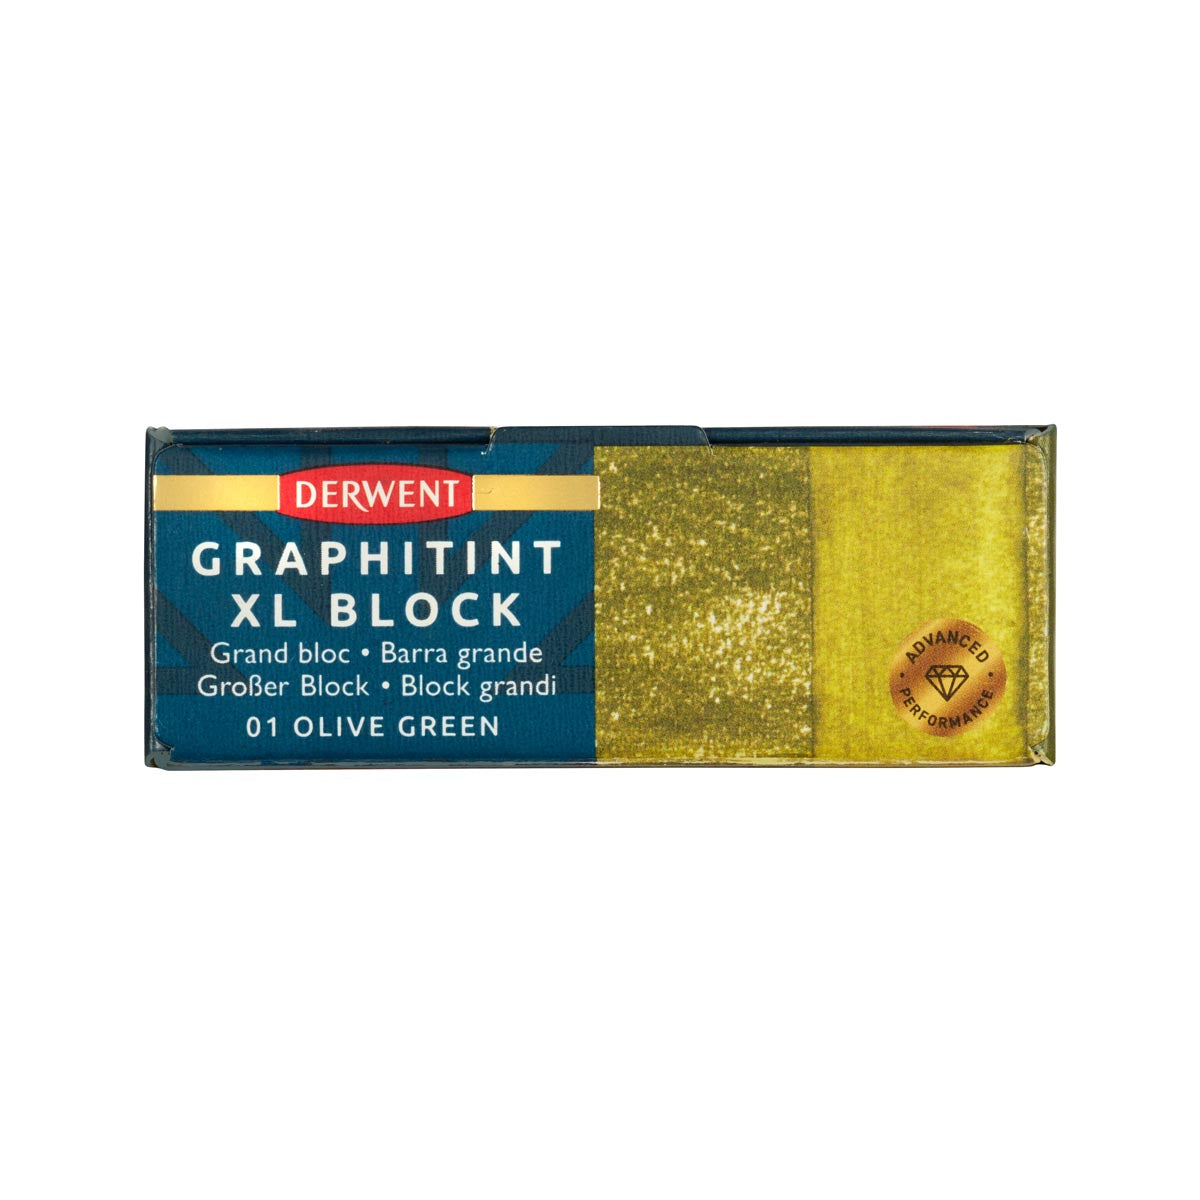 Derwent - Graphitint XL Block - Olive Green